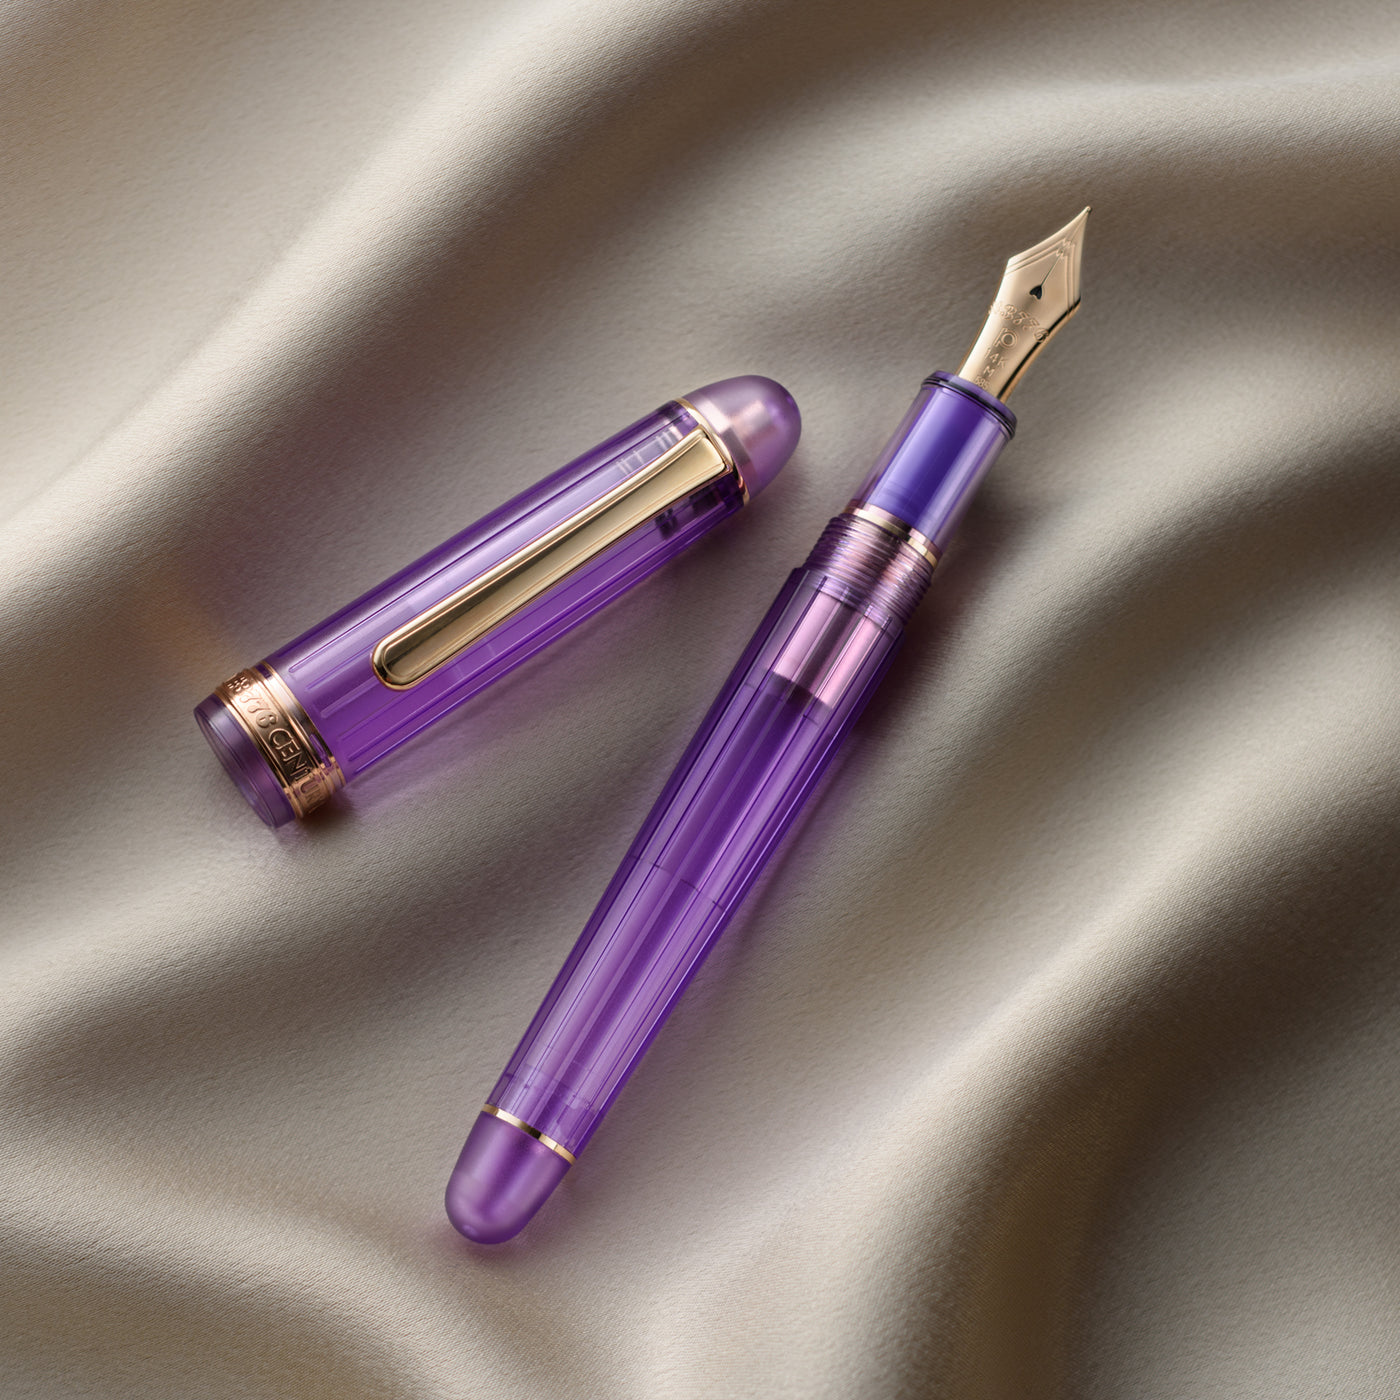 Platinum #3776 Fountain Pen - Nice Lavender